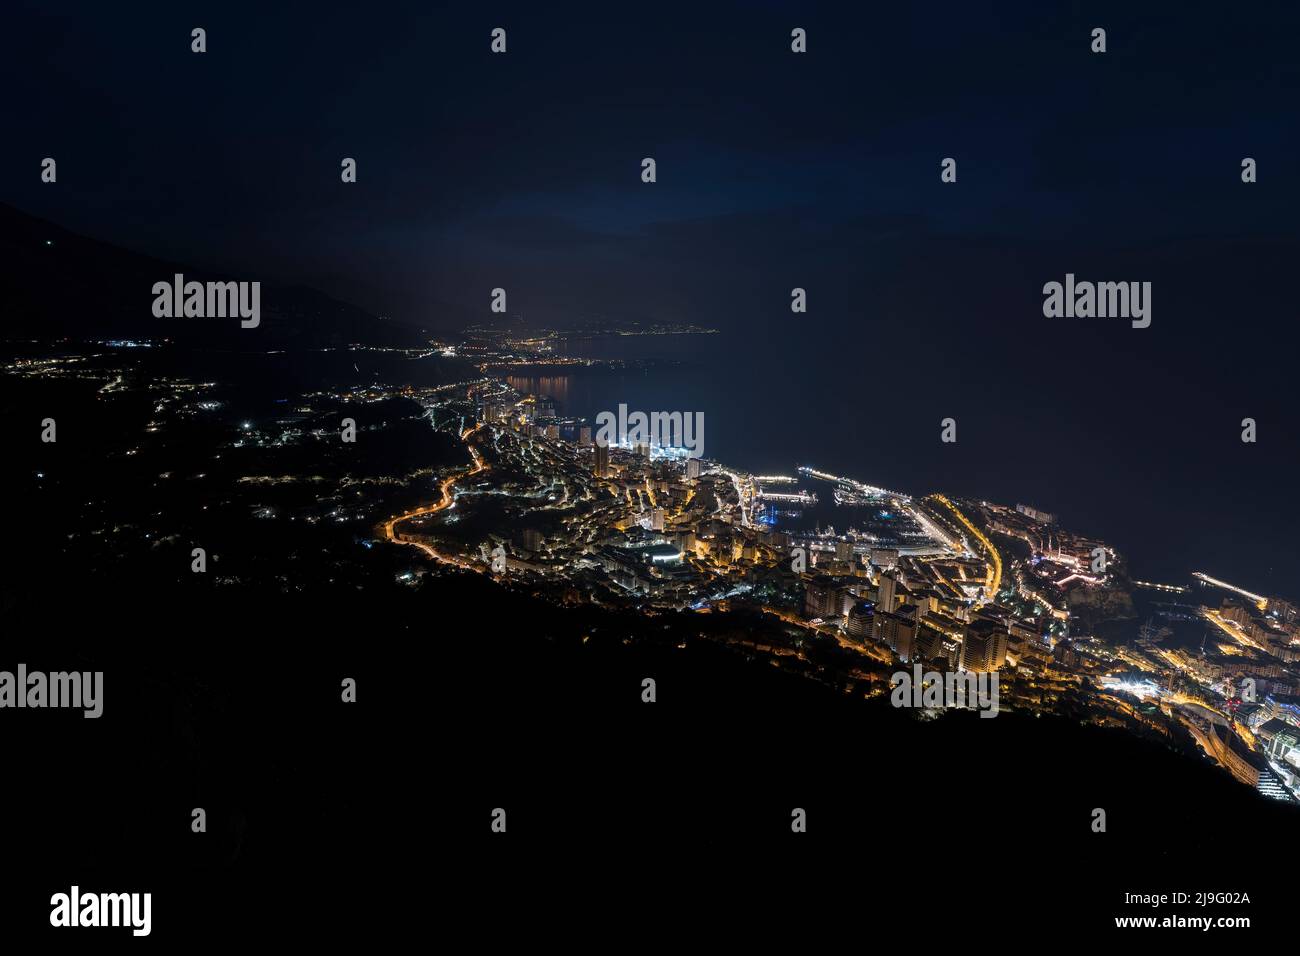 Monte Carlo Monaco, panorama of the city skyline at night Stock Photo